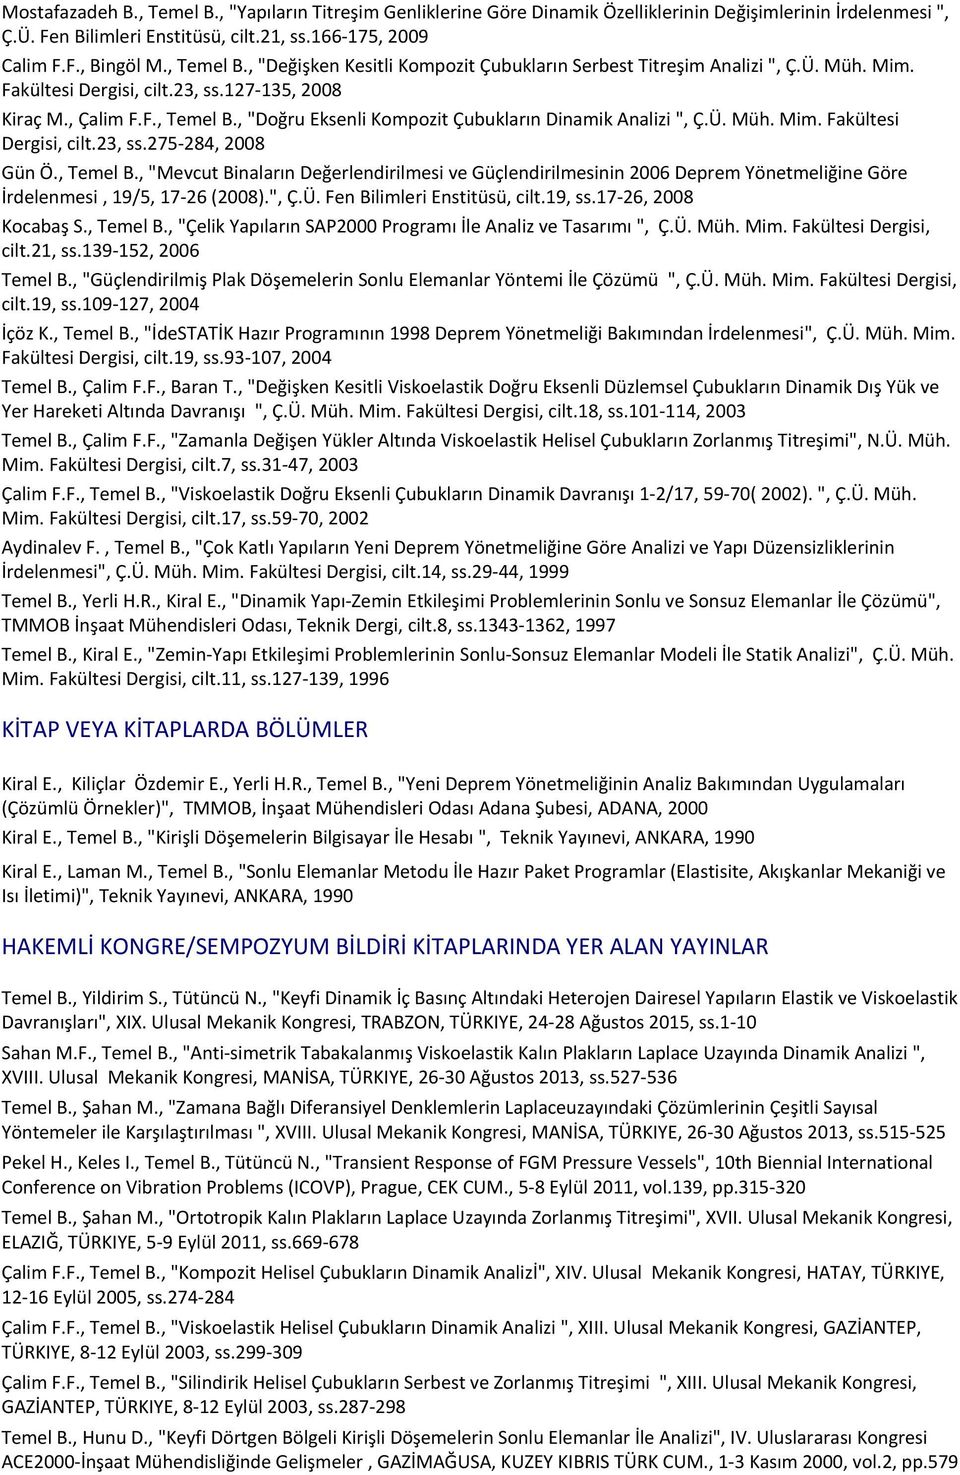 127-135, 2008 Kiraç M., Çalim F.F., Temel B., "Doğru Eksenli Kompozit Çubukların Dinamik Analizi ", Ç.Ü. Müh. Mim. Fakültesi Dergisi, cilt.23, ss.275-284, 2008 Gün Ö., Temel B., "Mevcut Binaların Değerlendirilmesi ve Güçlendirilmesinin 2006 Deprem Yönetmeliğine Göre İrdelenmesi, 19/5, 17-26 (2008).